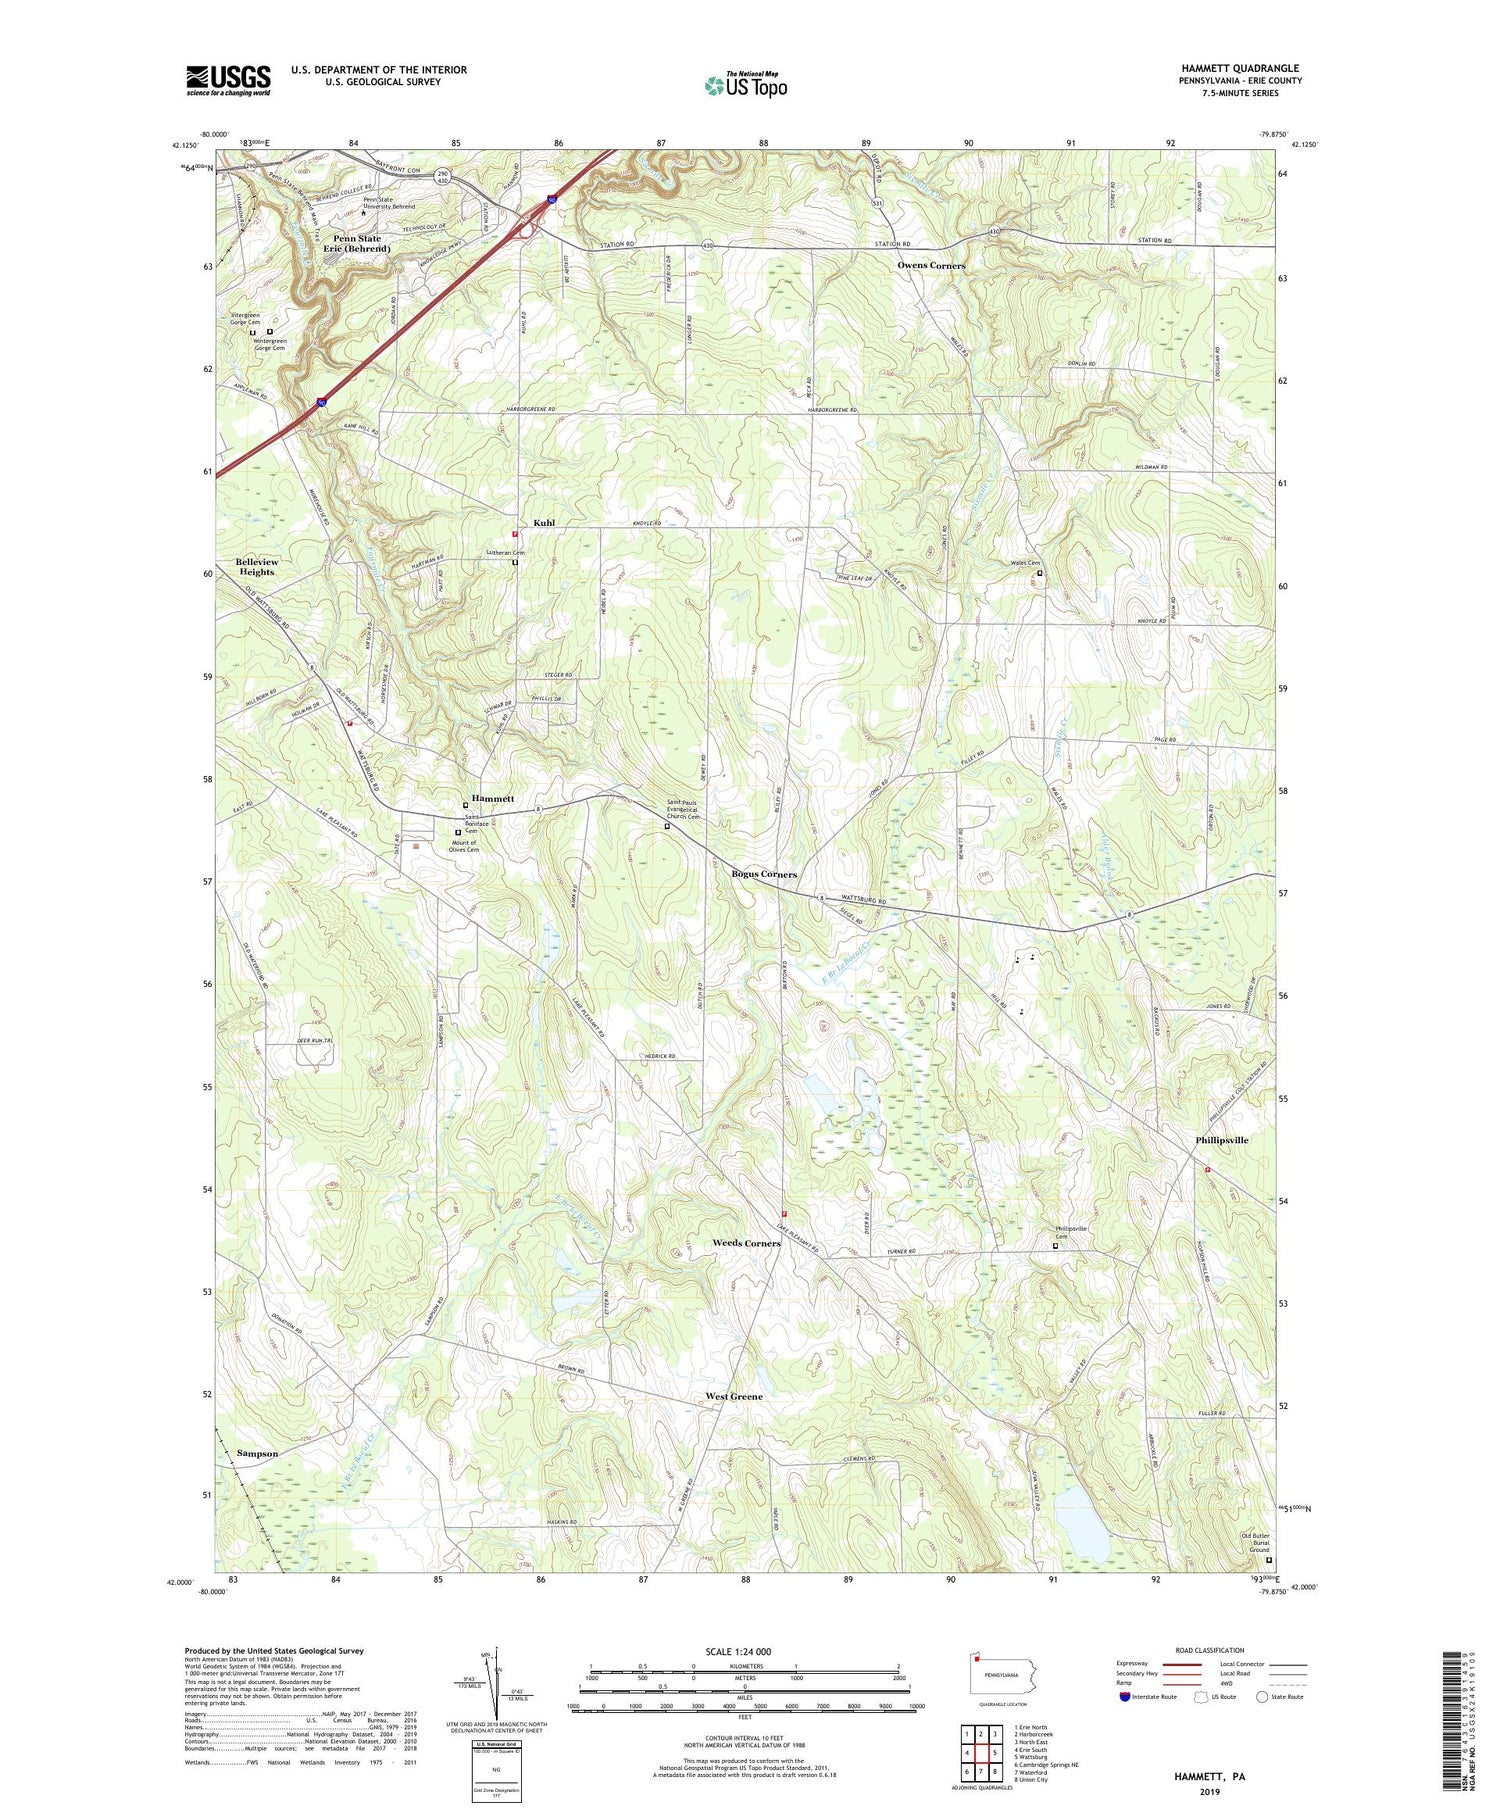 Hammett Pennsylvania US Topo Map Image